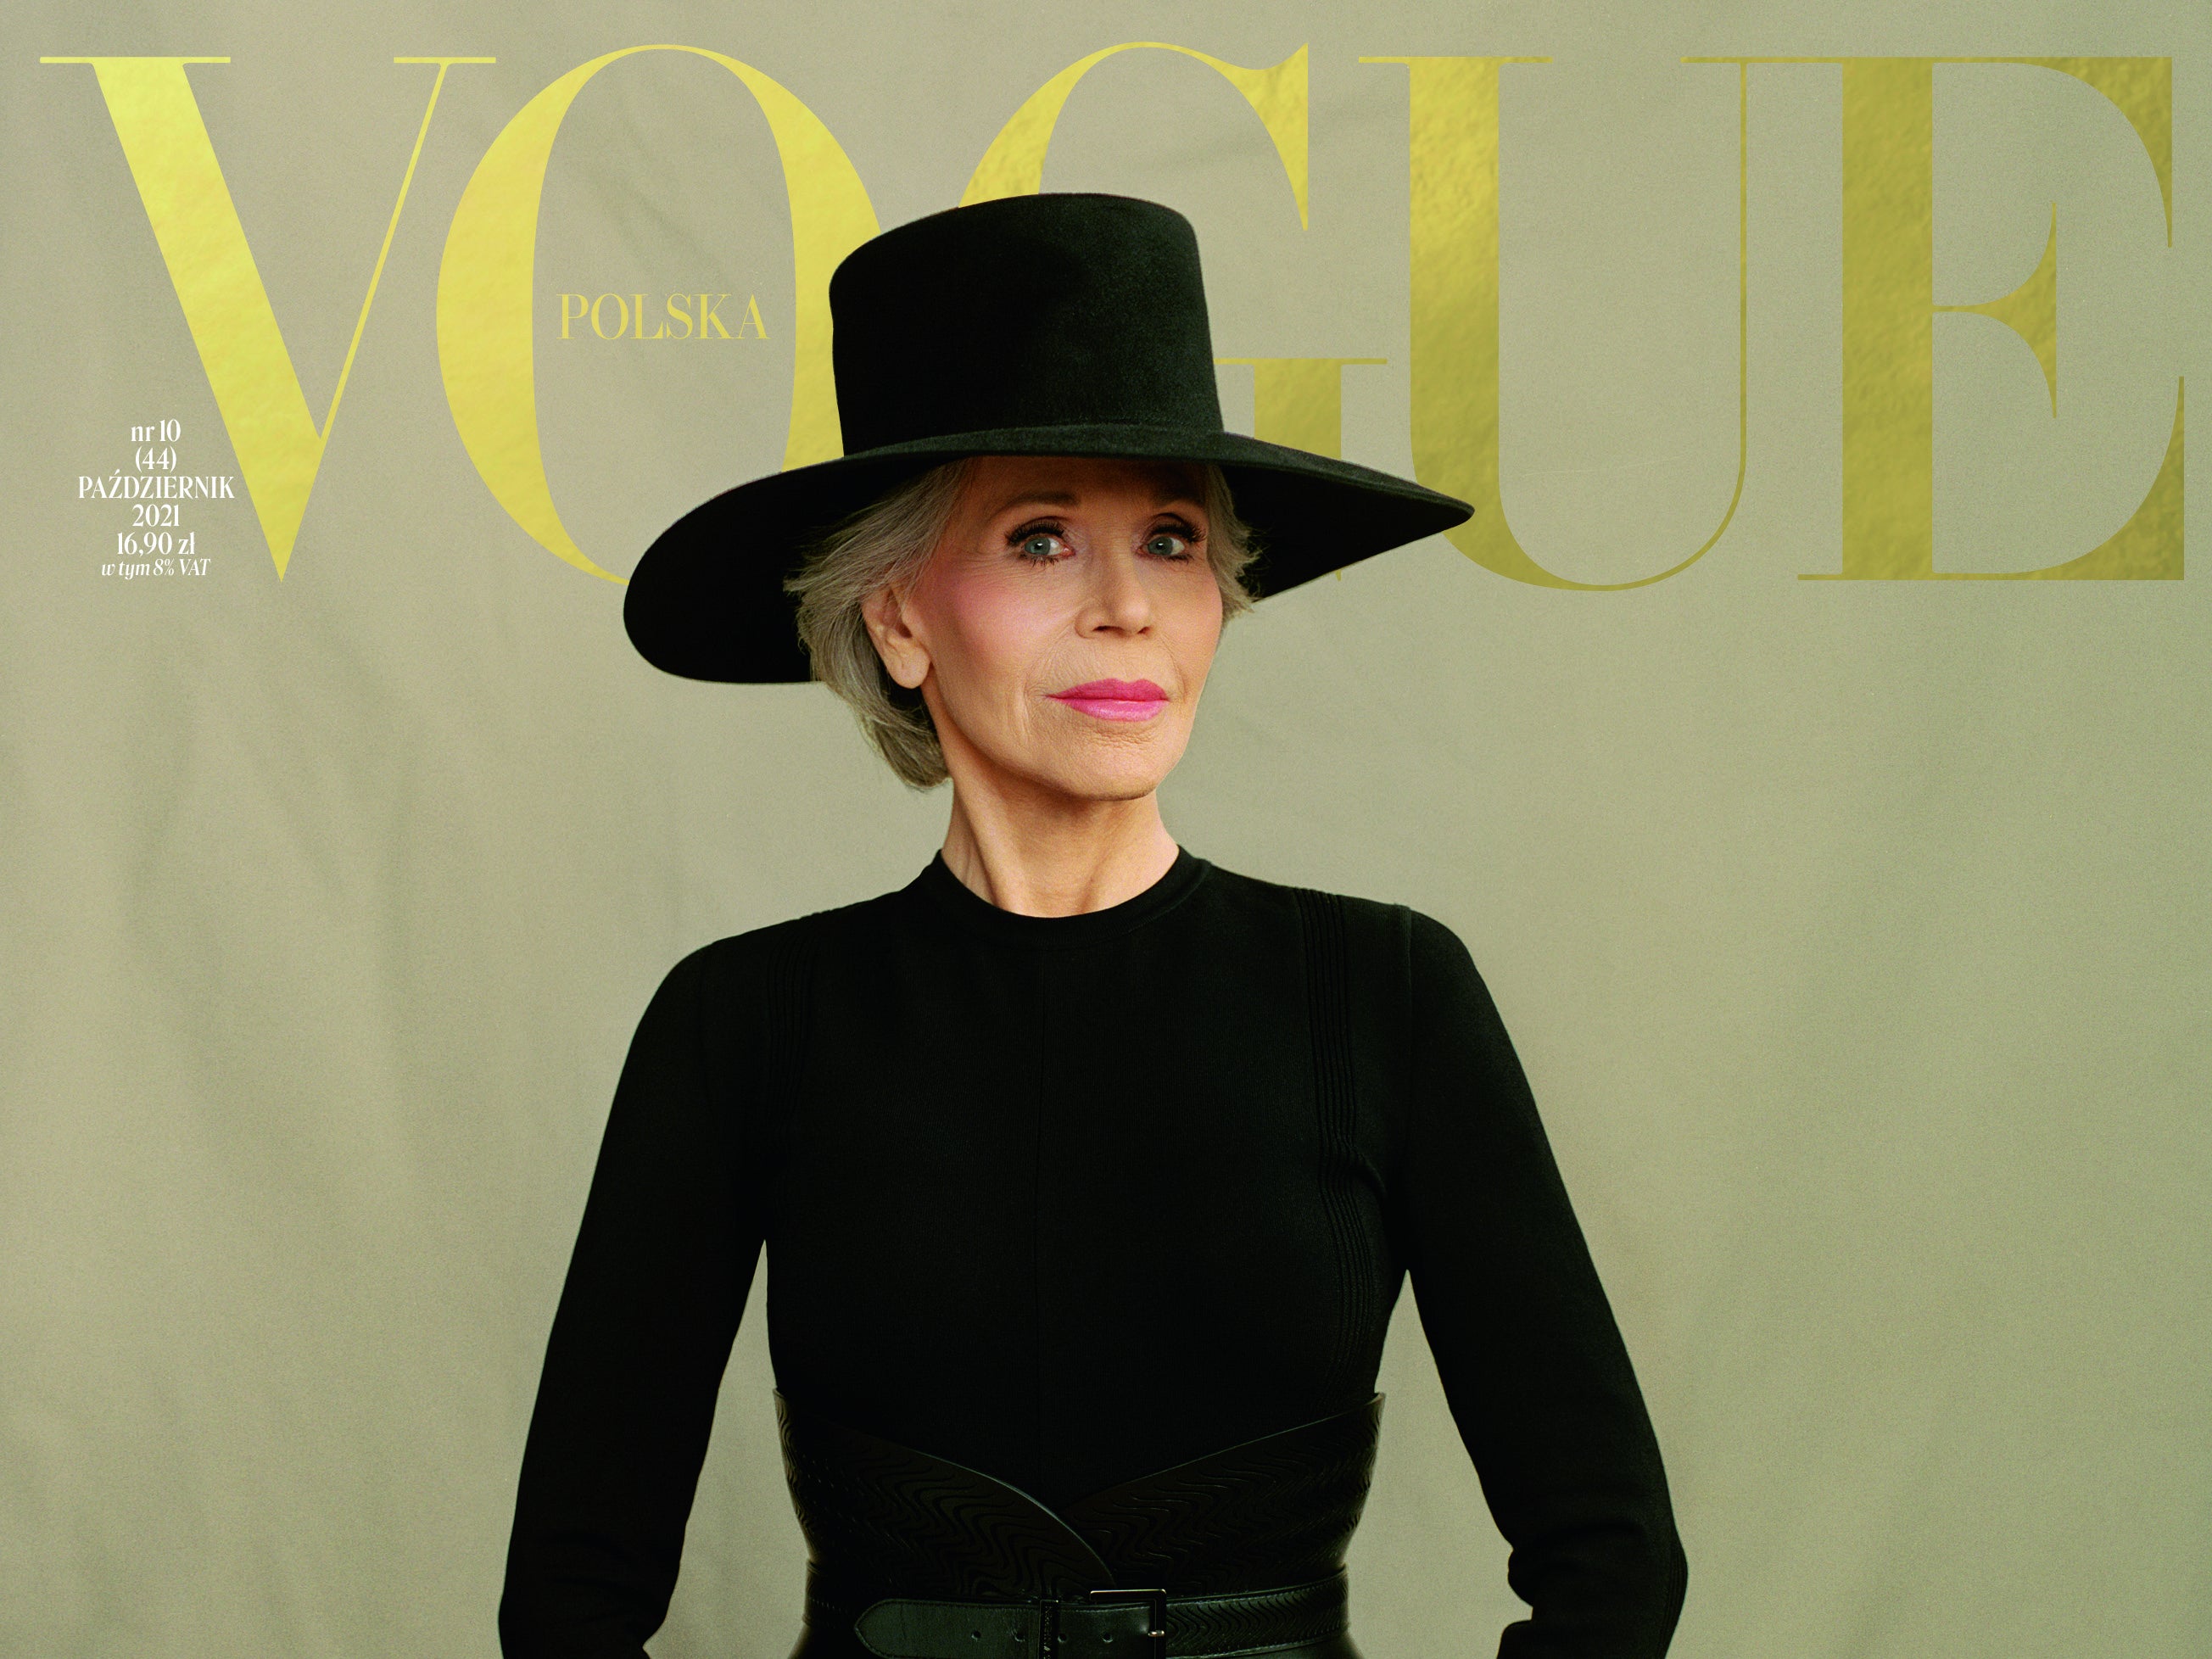 Jane Fonda covers Vogue Poland